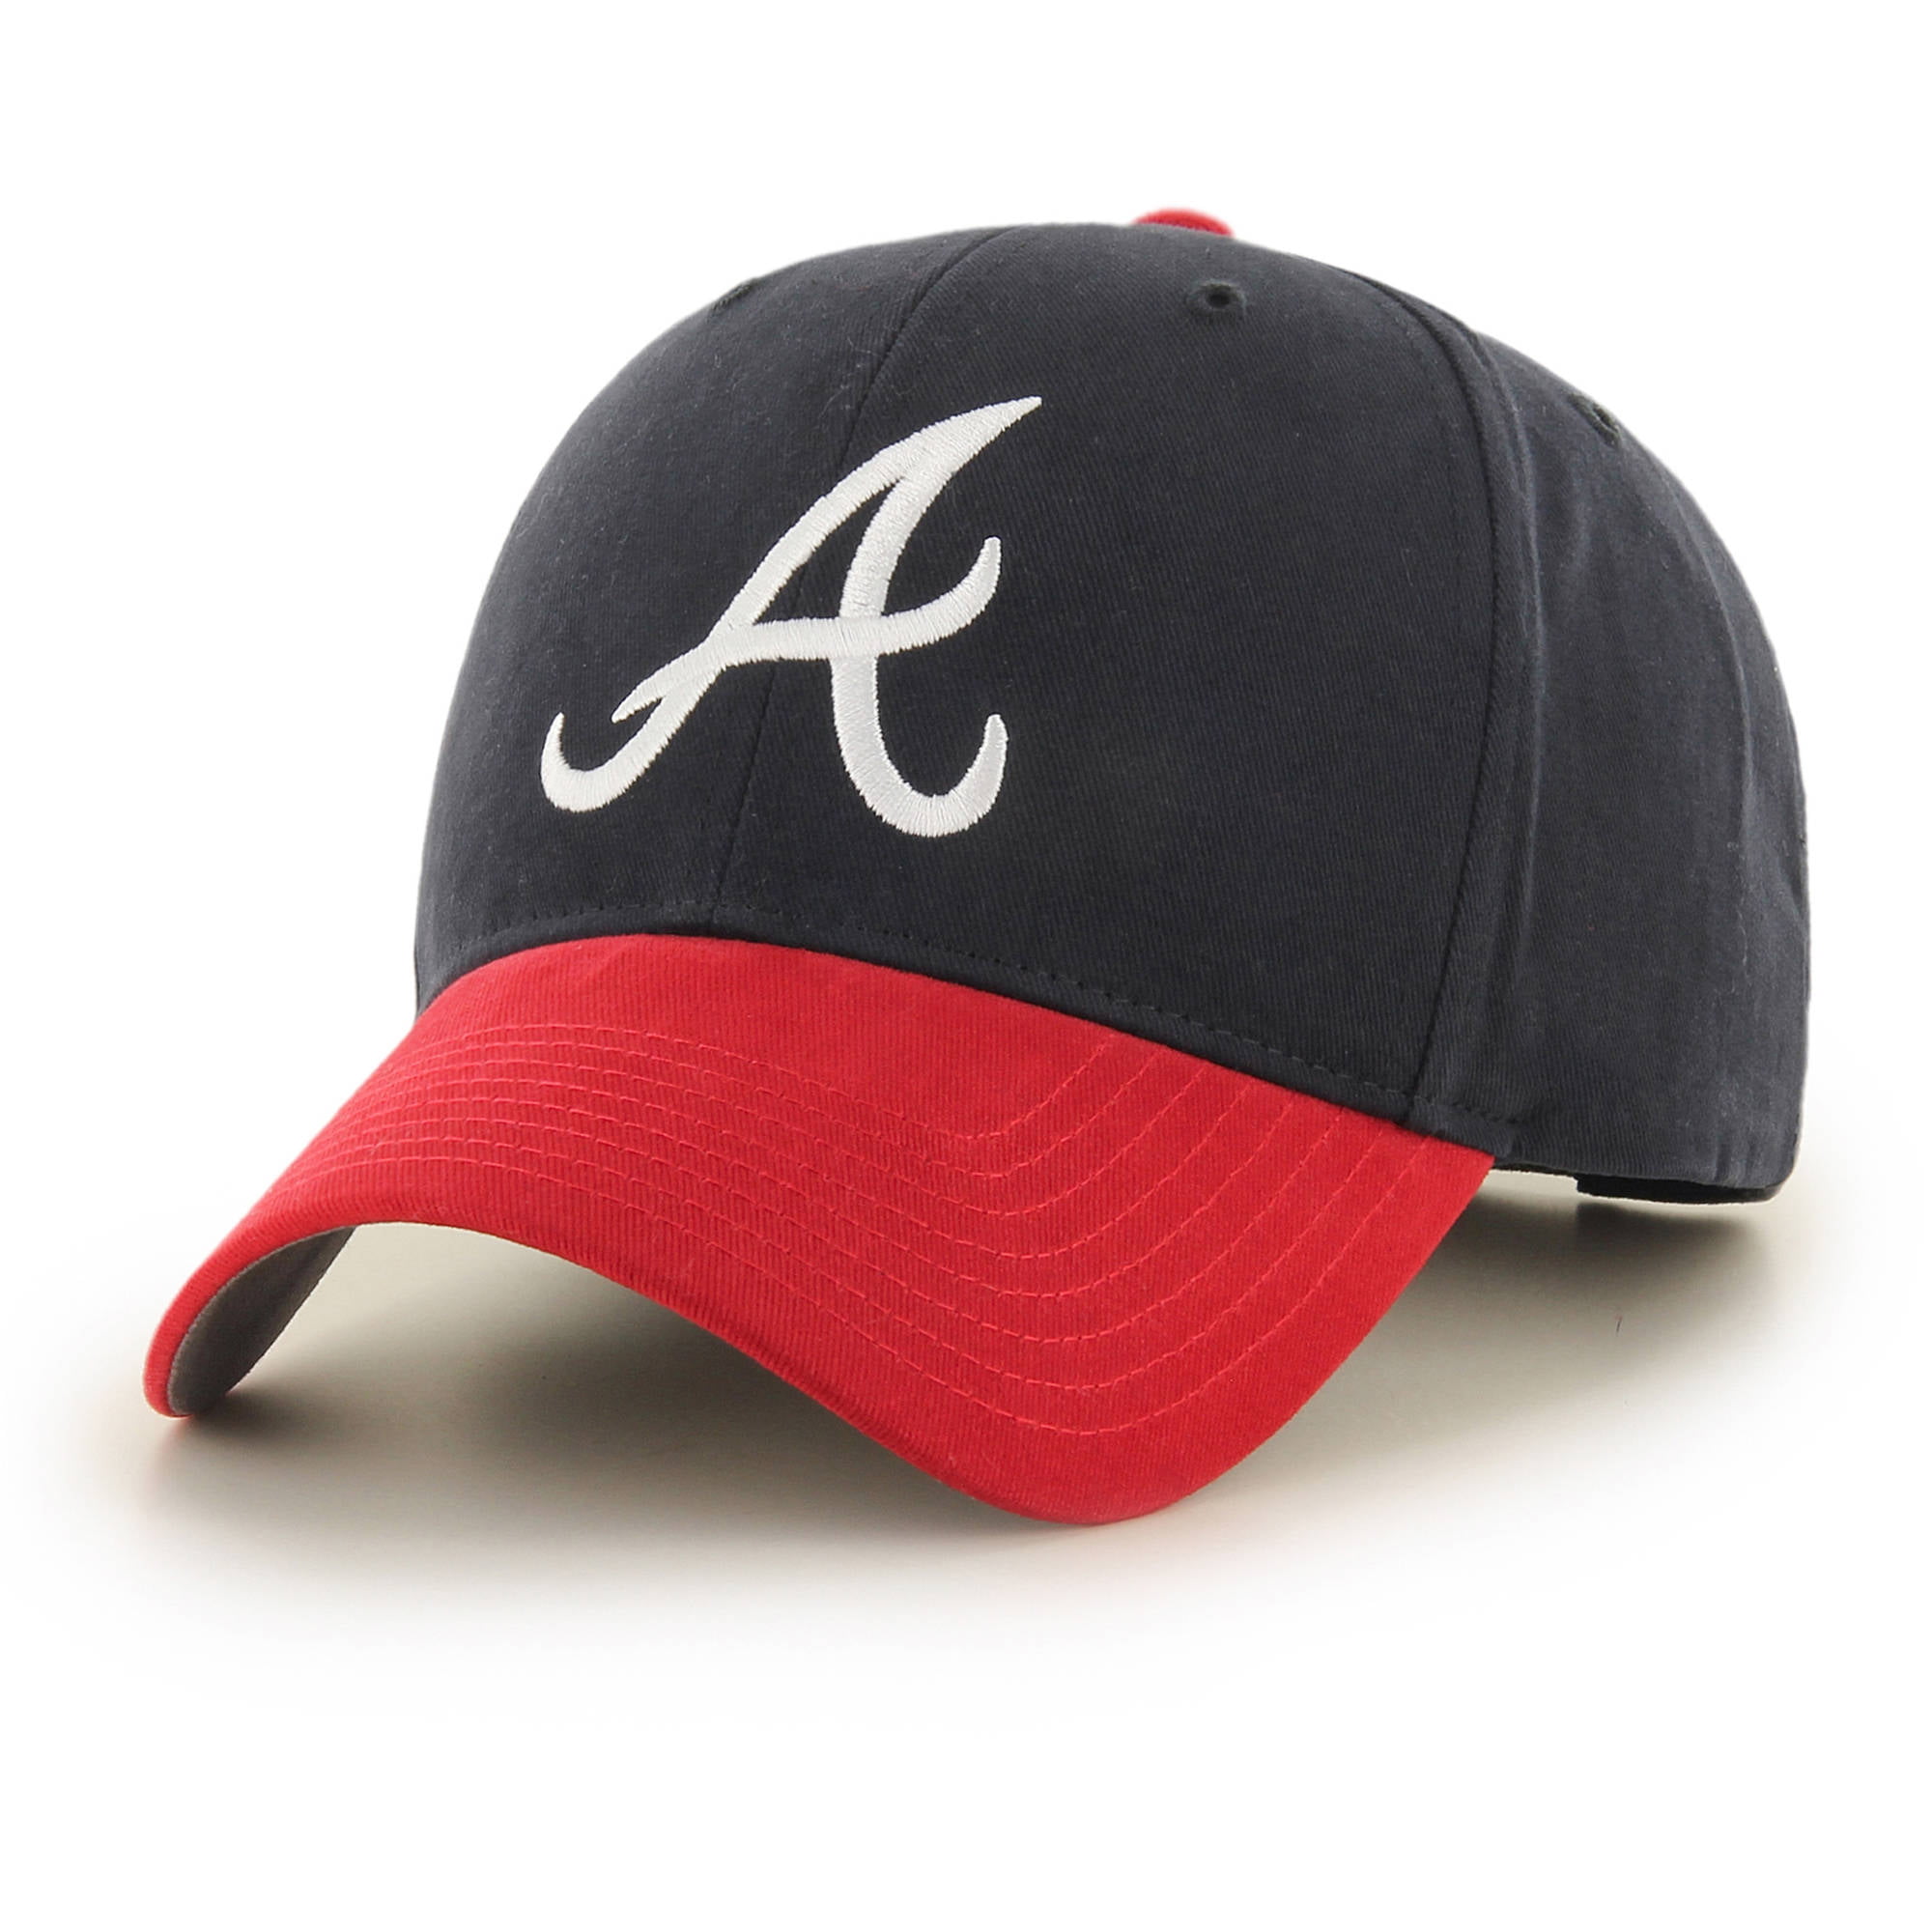 MLB Atlanta Braves Completion Adjustable CapHat by Fan Favorite   Walmartcom